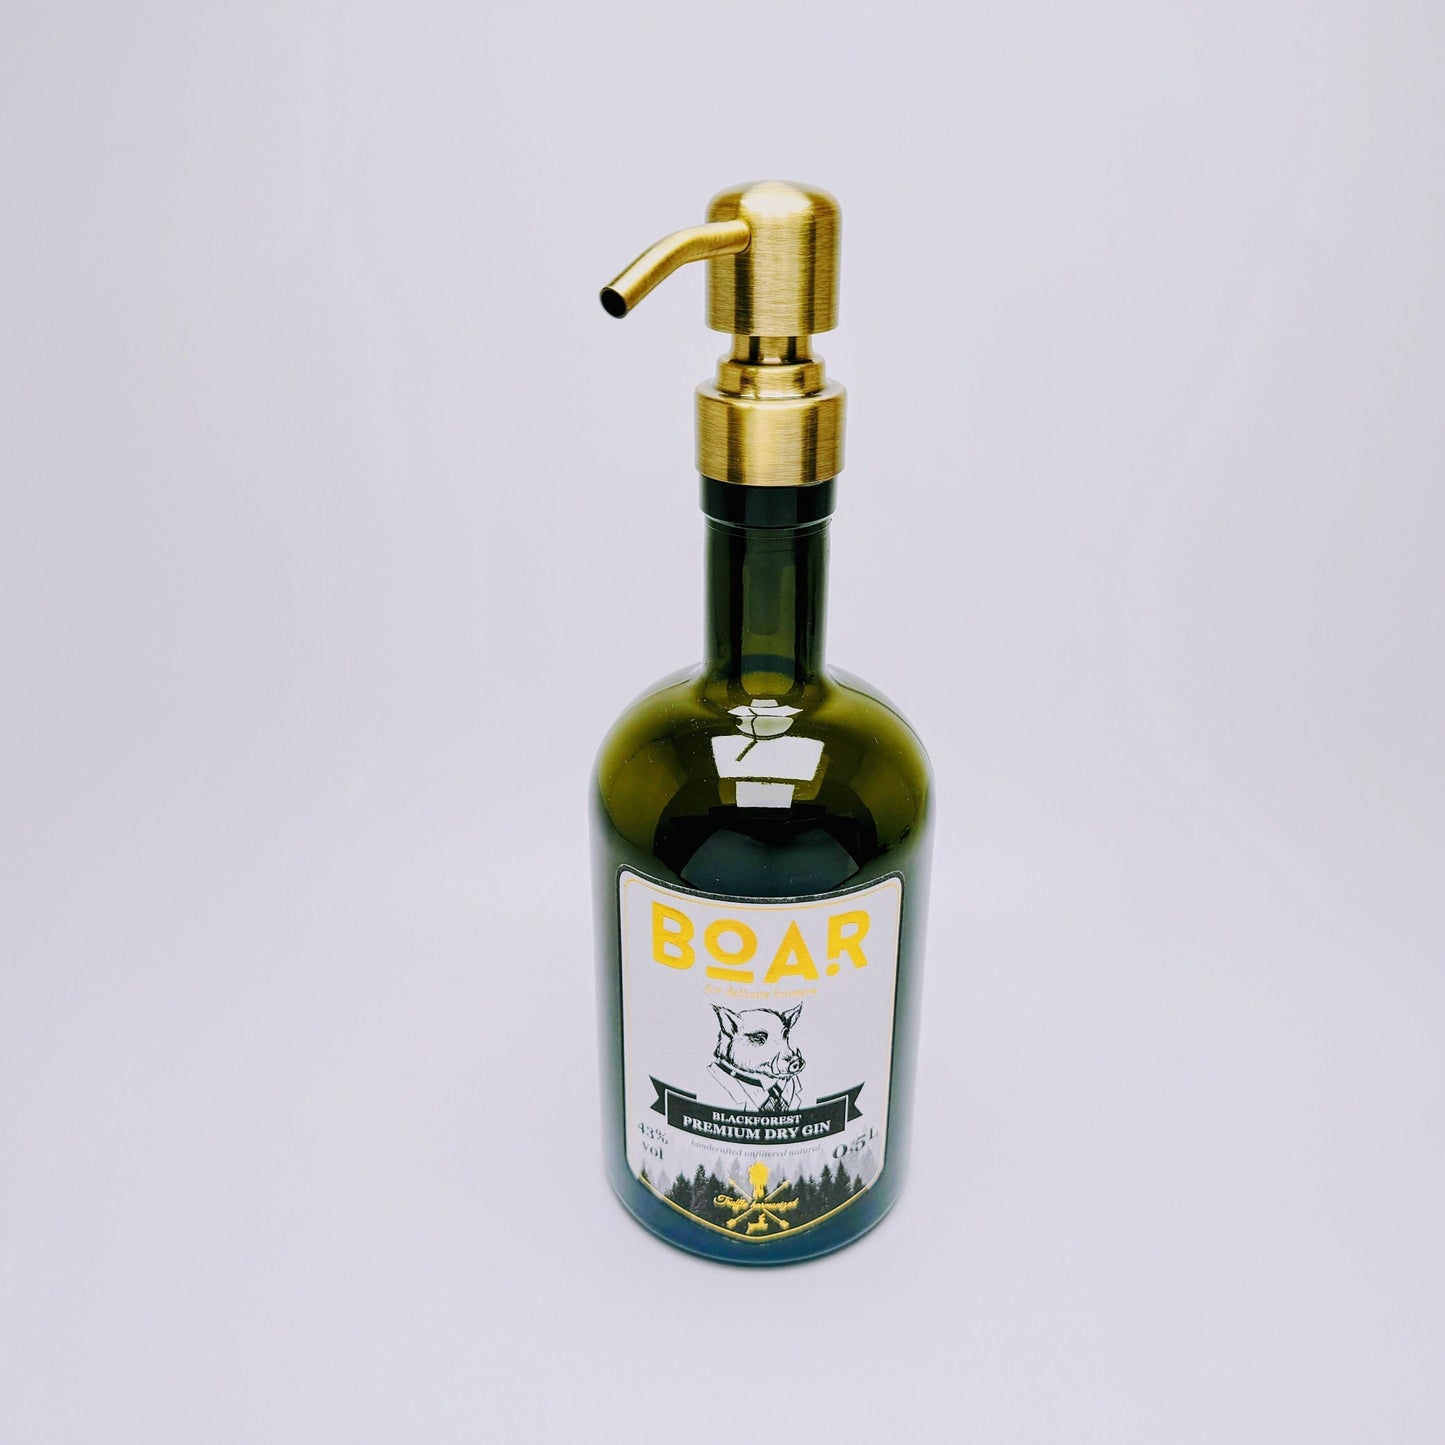 Gin-Seifenspender "Boar" | Upcycling Pumpspender aus Boar Gin Flasche | Nachfüllbar mit Seife | Bad Deko | Geschenk Schwarzwald